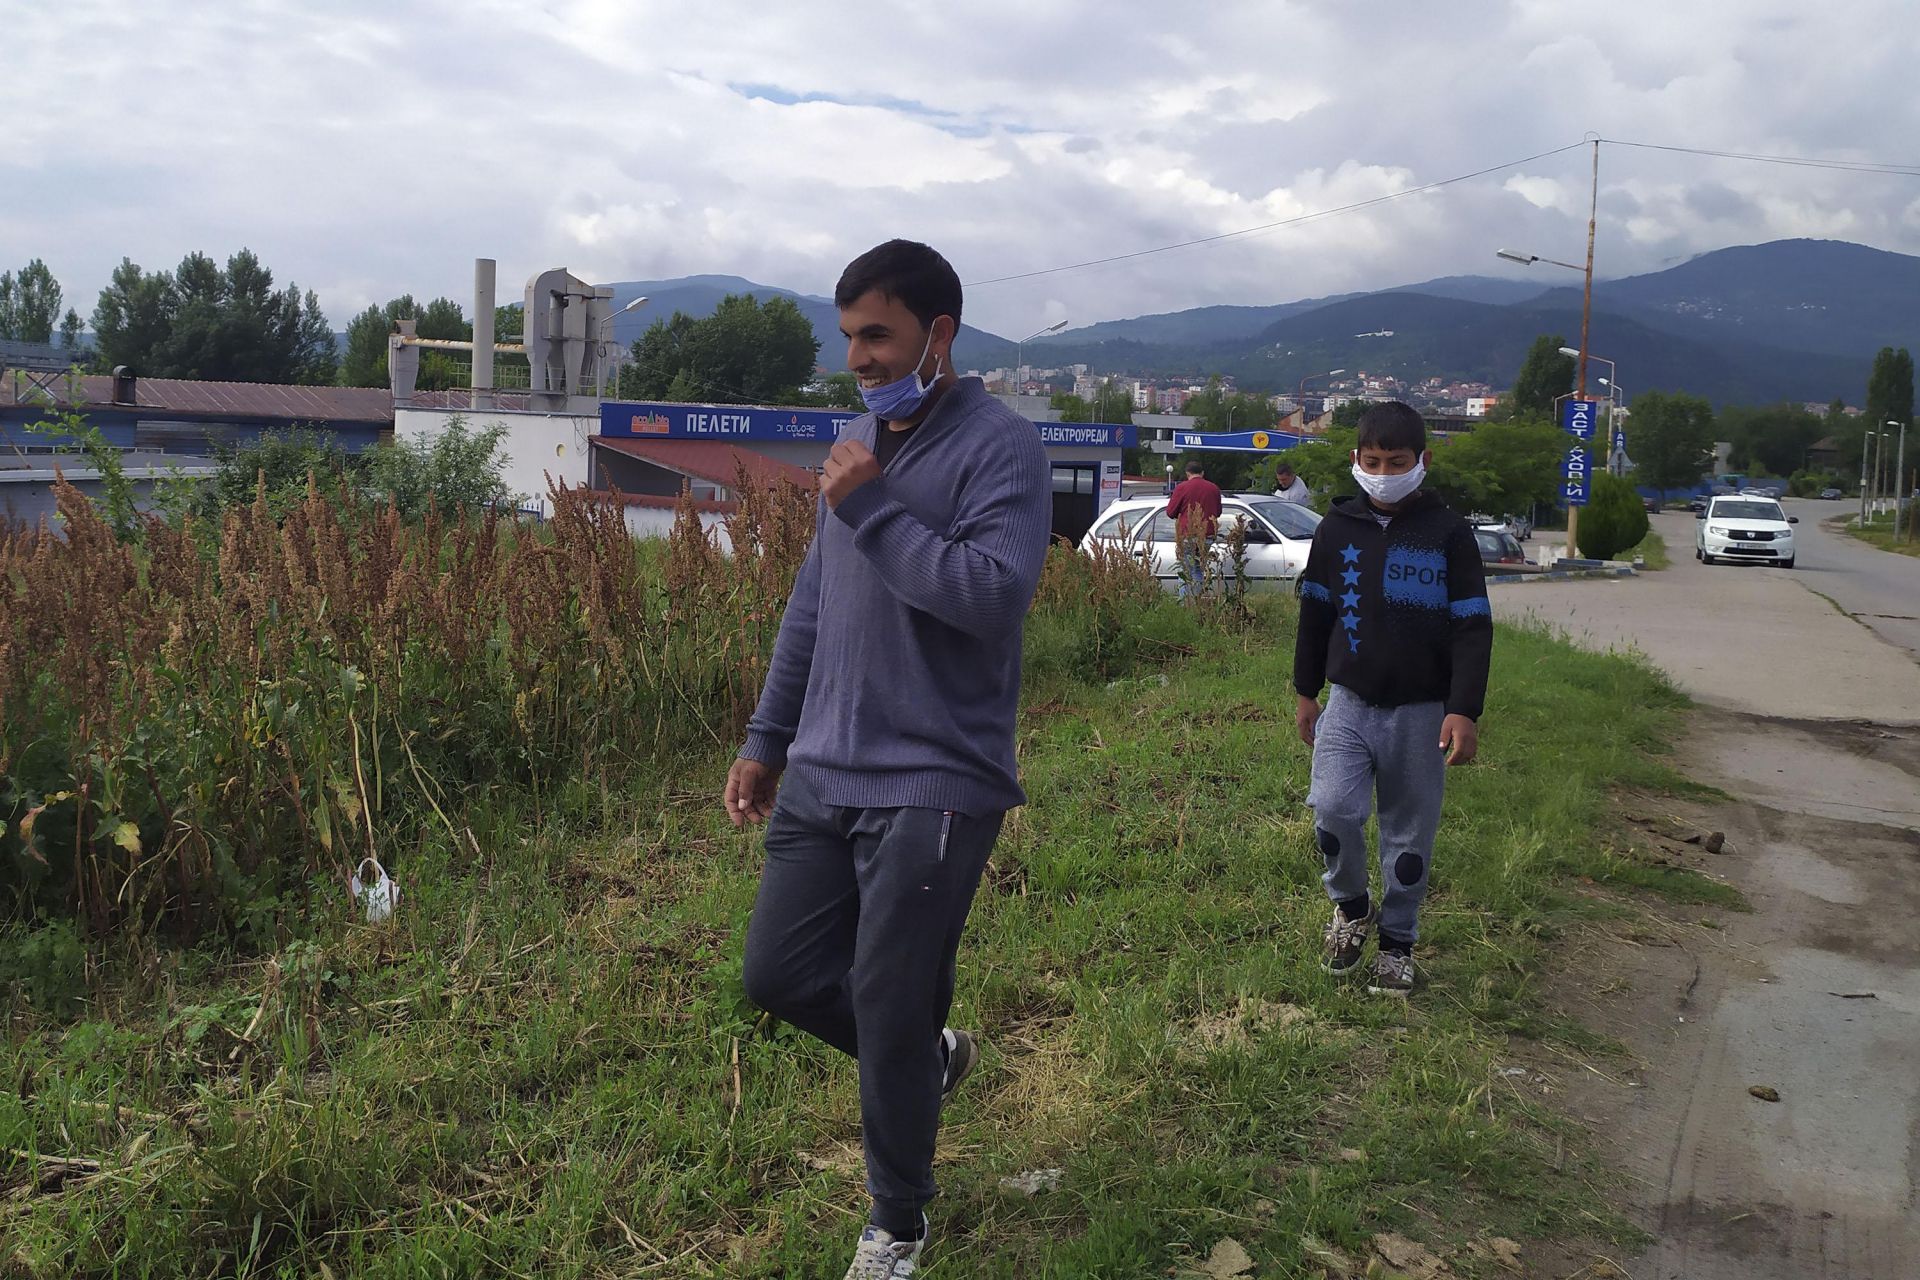 Ромите са с маски, за да се предпазят от коронавирус